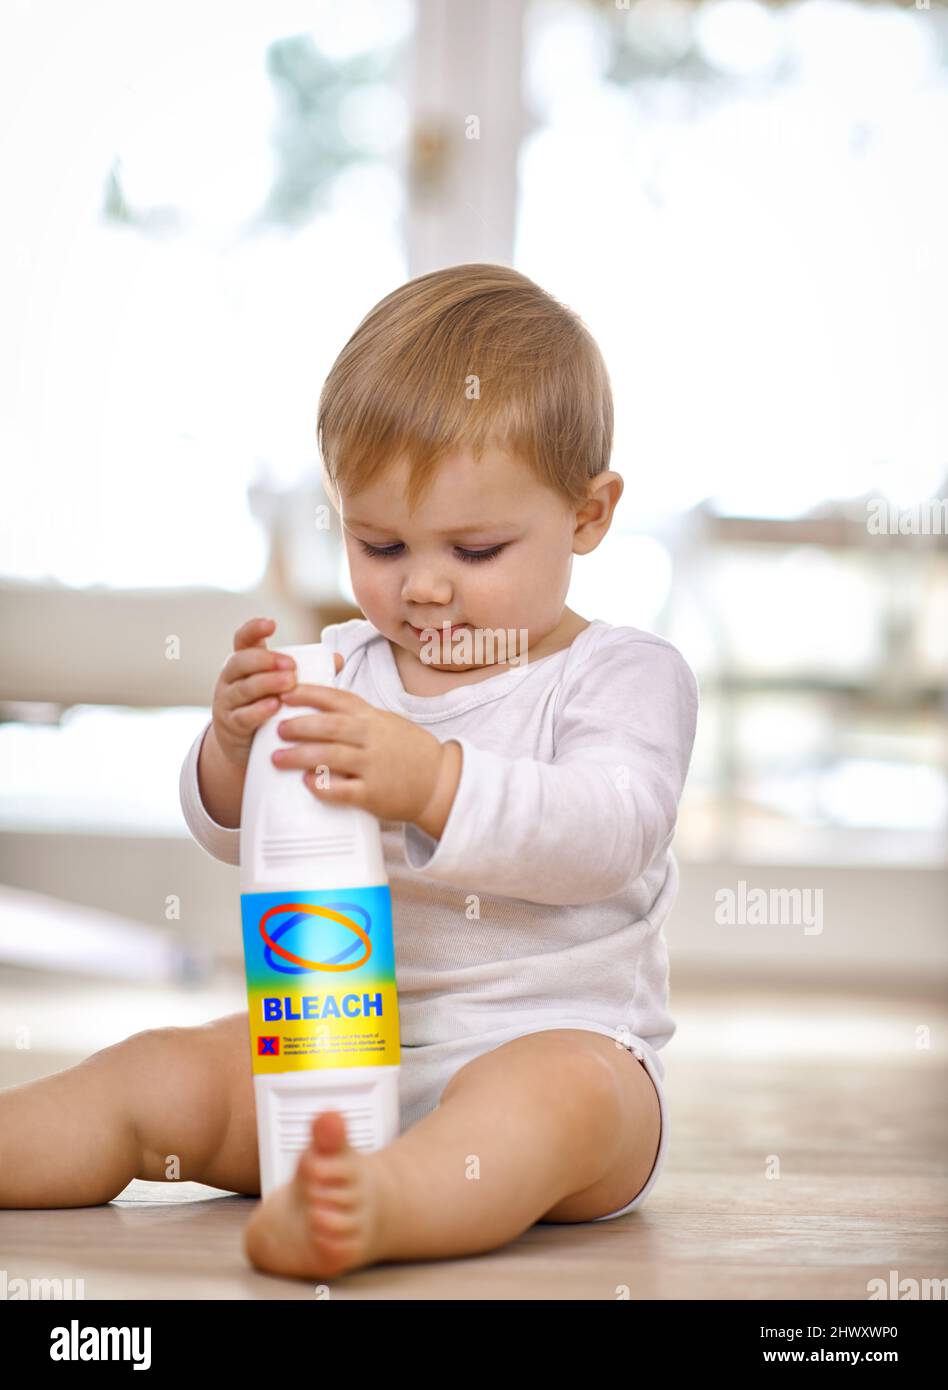 Tenere i bambini al sicuro - tenere gli oggetti nocivi fuori dalla portata. Shot di un bambino che gioca con un biberon con candeggina. Foto Stock